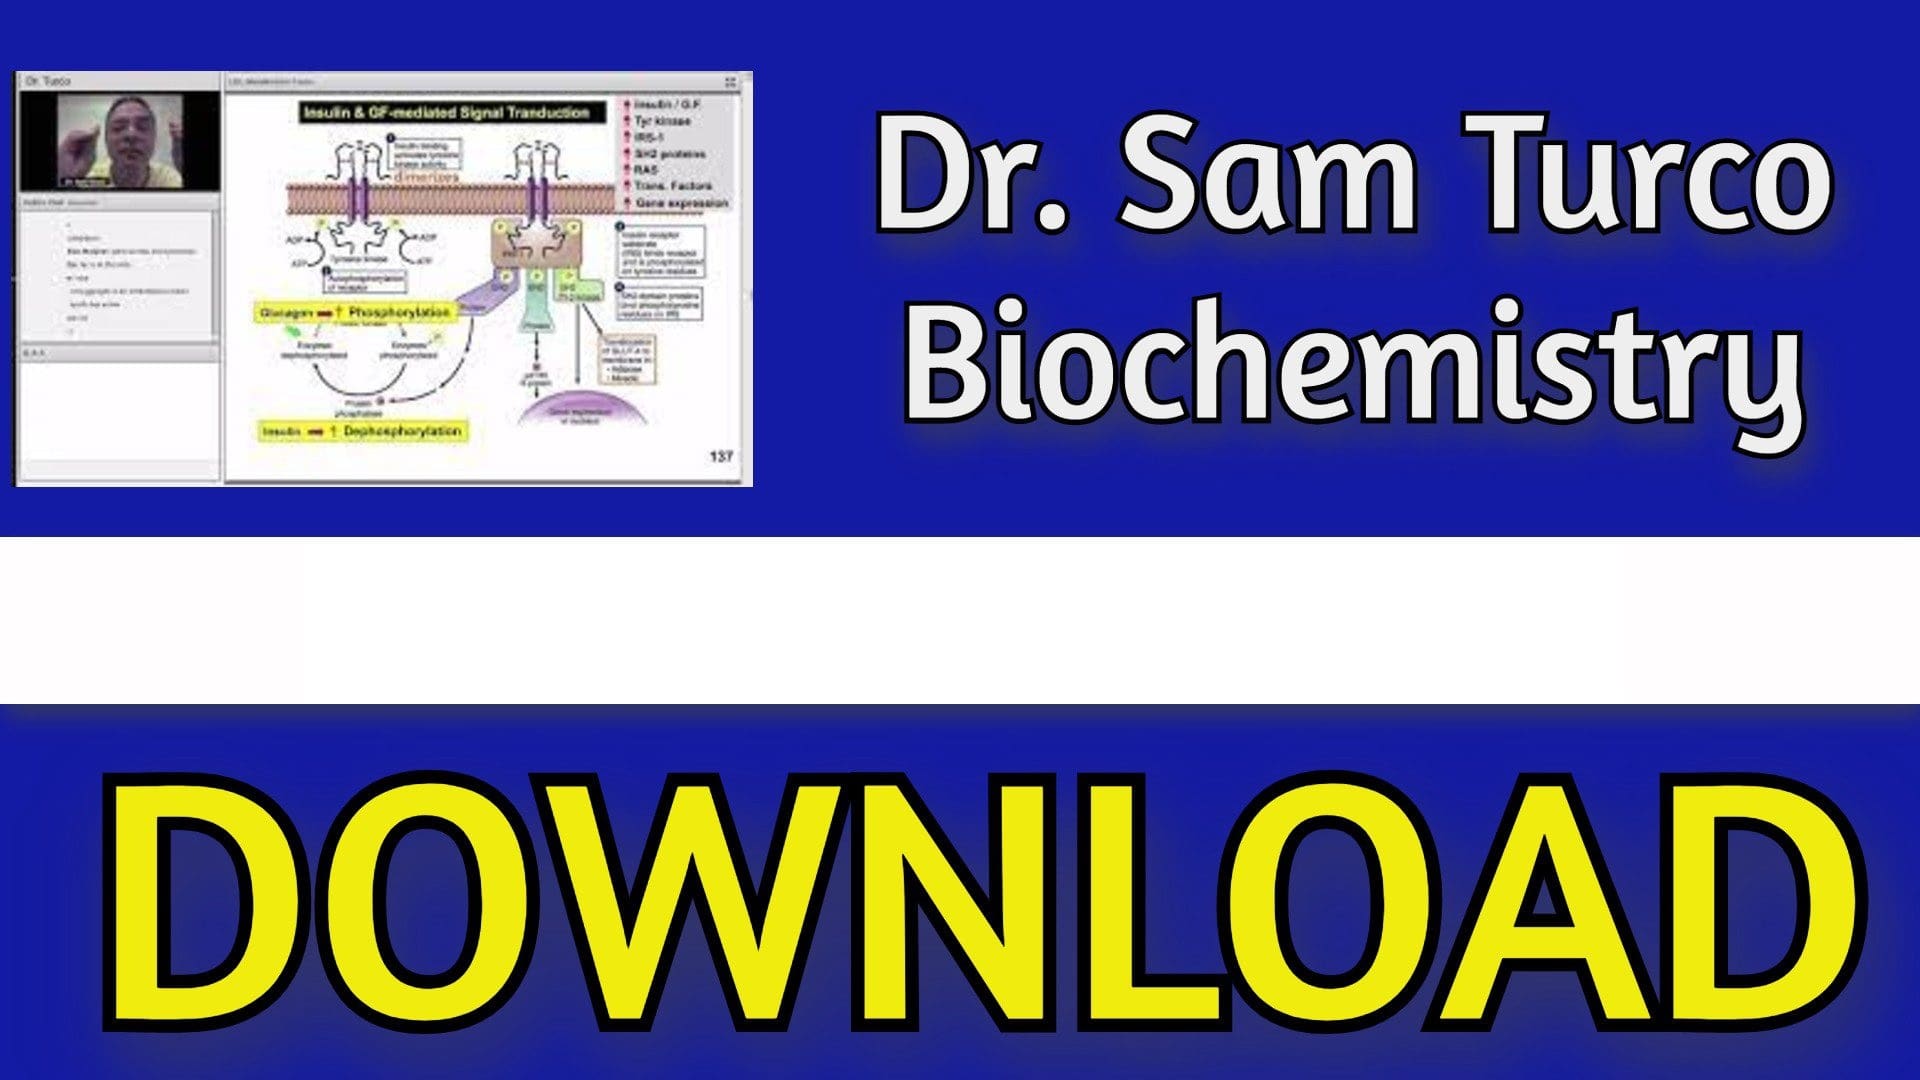 Sam Turco's Biochemistry 2023 Classroom